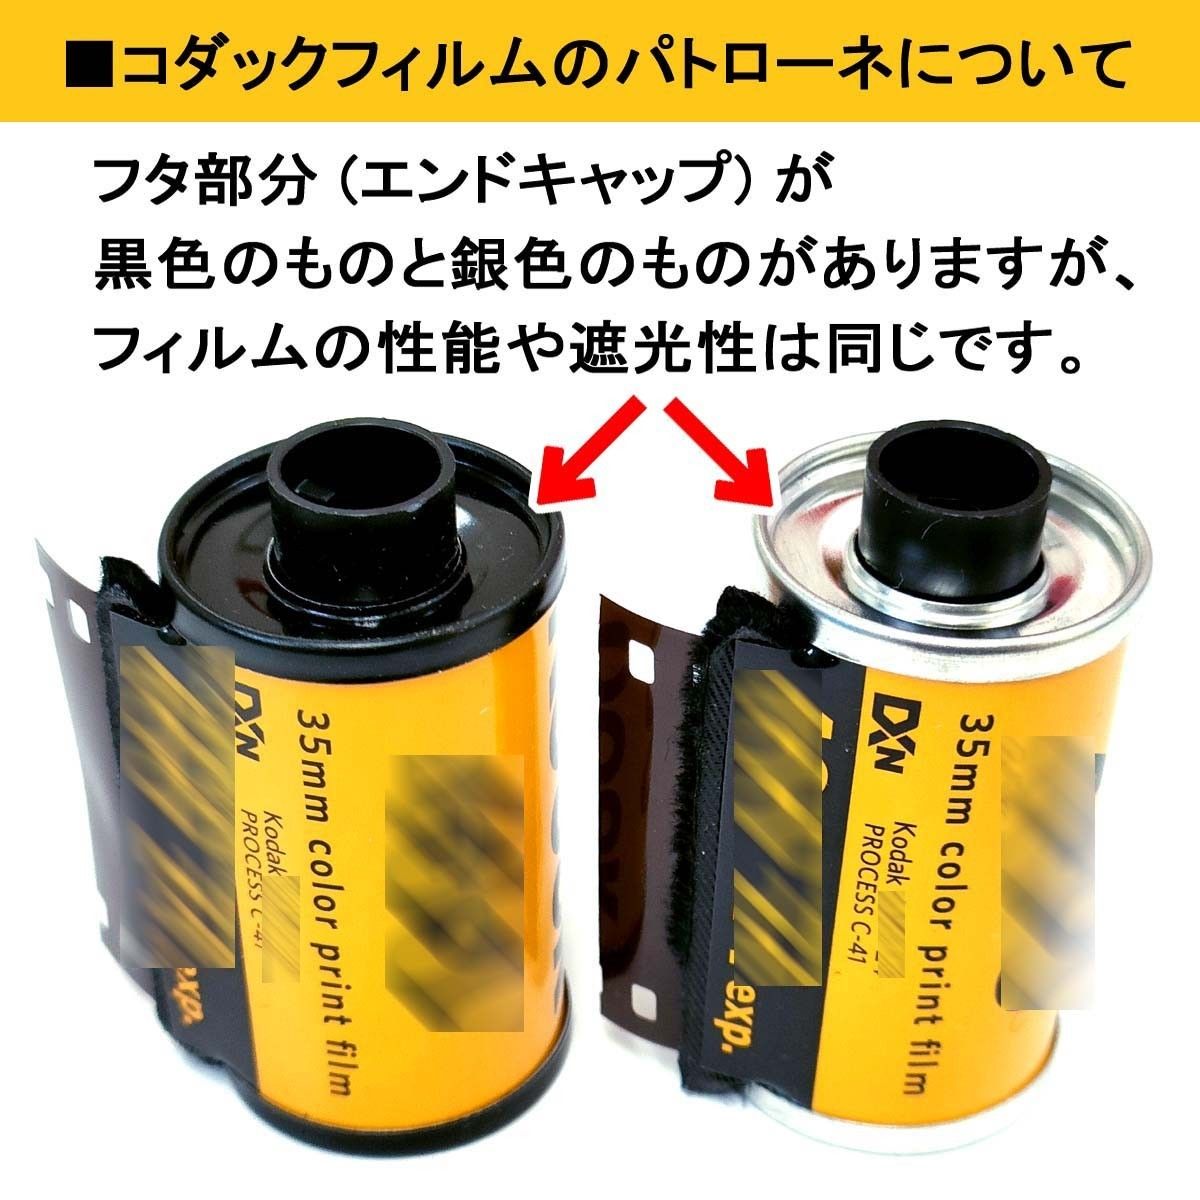 GOLD200-36枚撮【3本入】Kodak ネガカラーフィルム 135/35mm 新品 コダック ネガフィルム